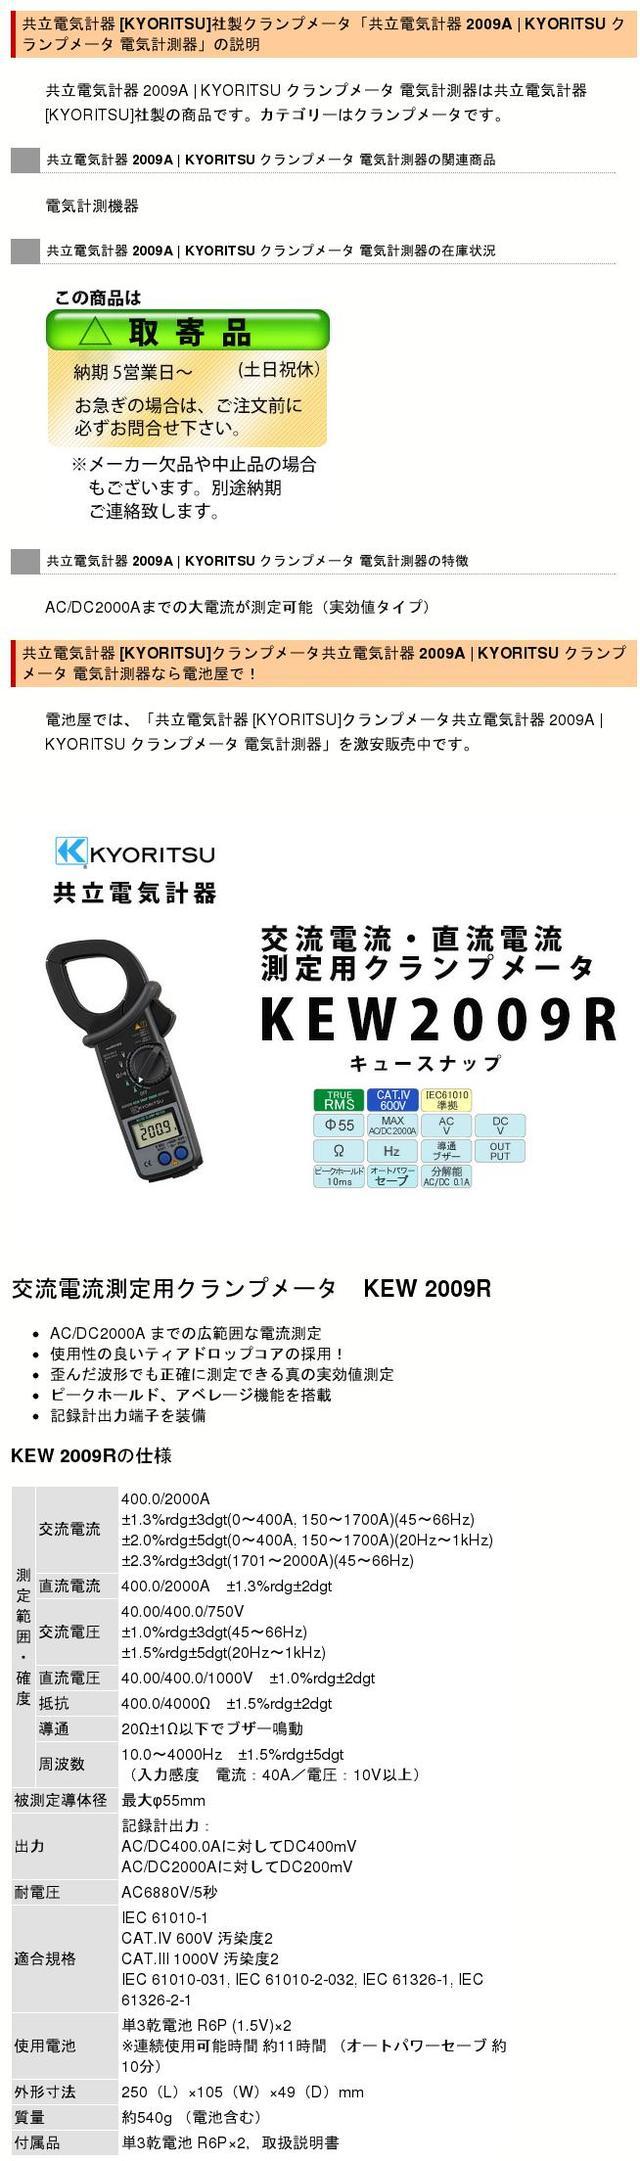 ○日本正規品○ 共立電気計器 MODEL 2010 KYORITSU クランプメータ 電気計測器